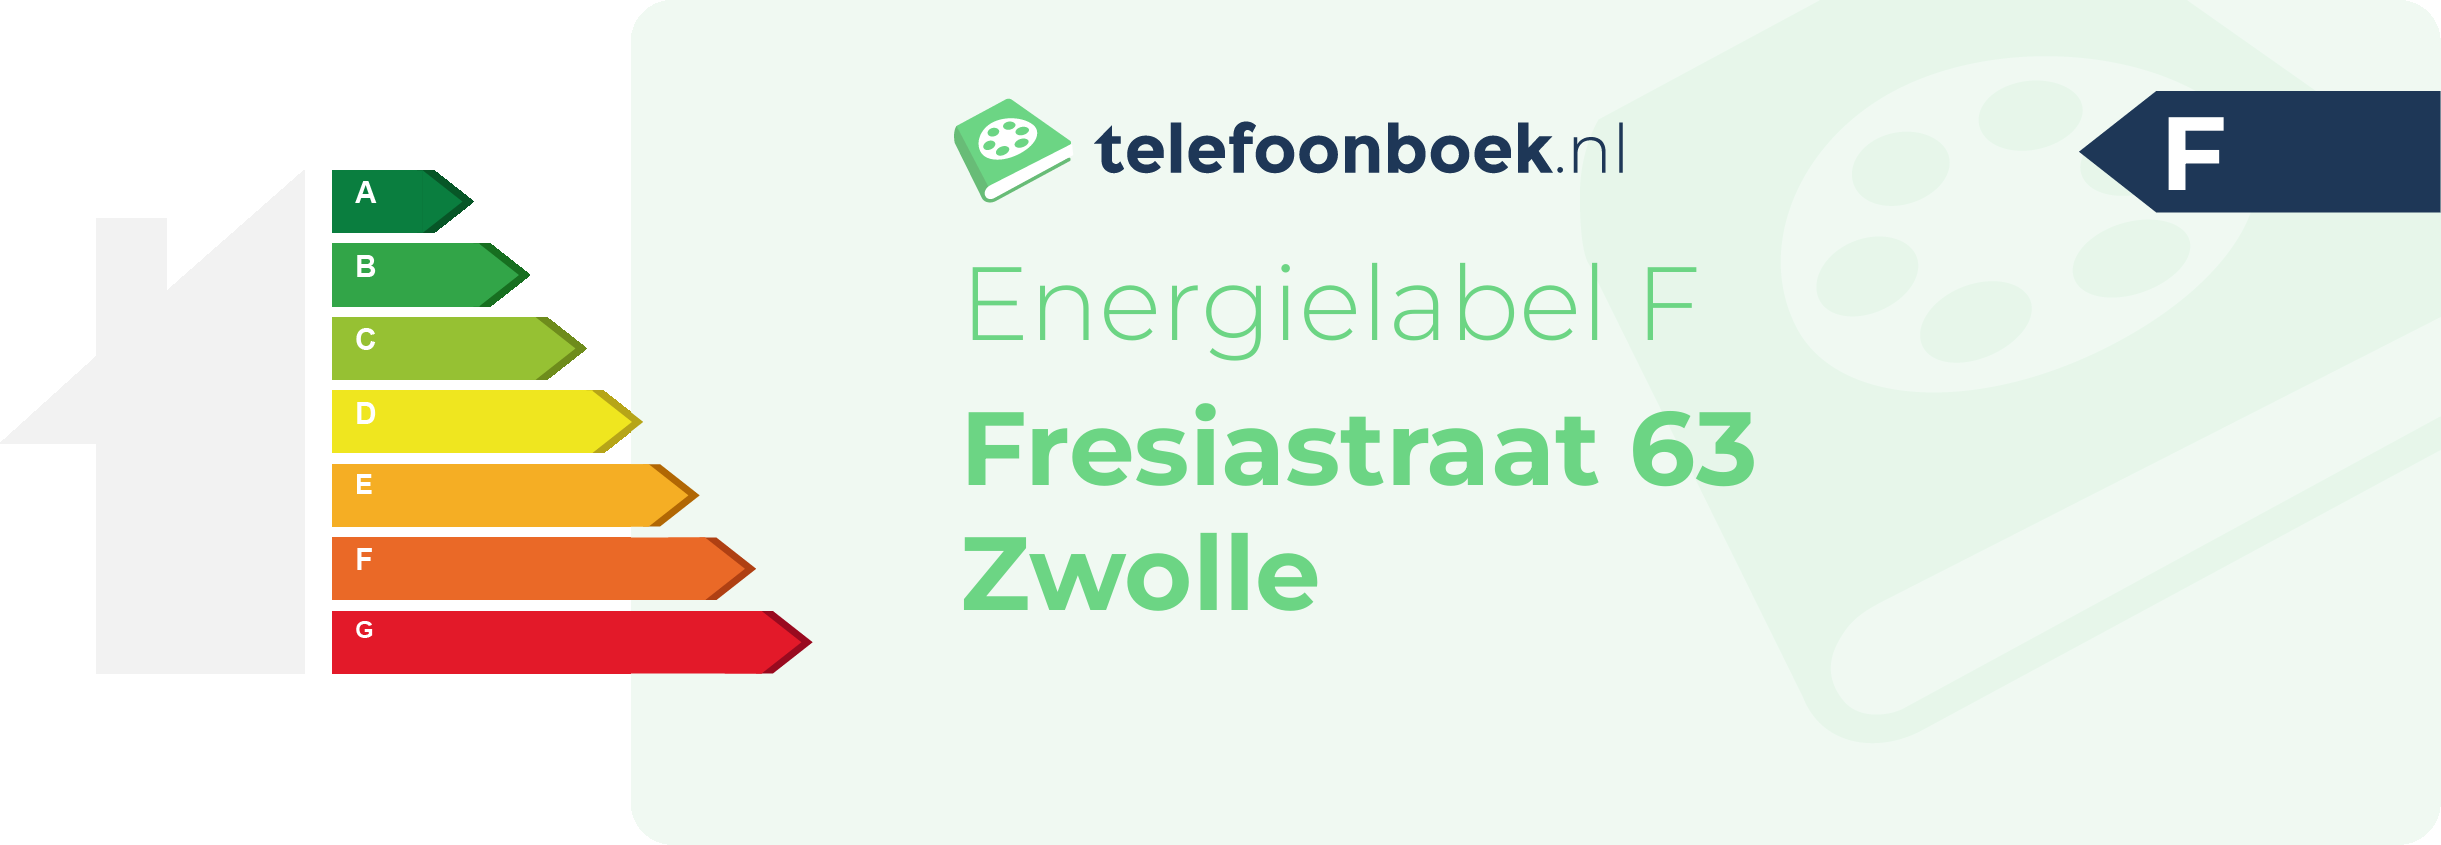 Energielabel Fresiastraat 63 Zwolle